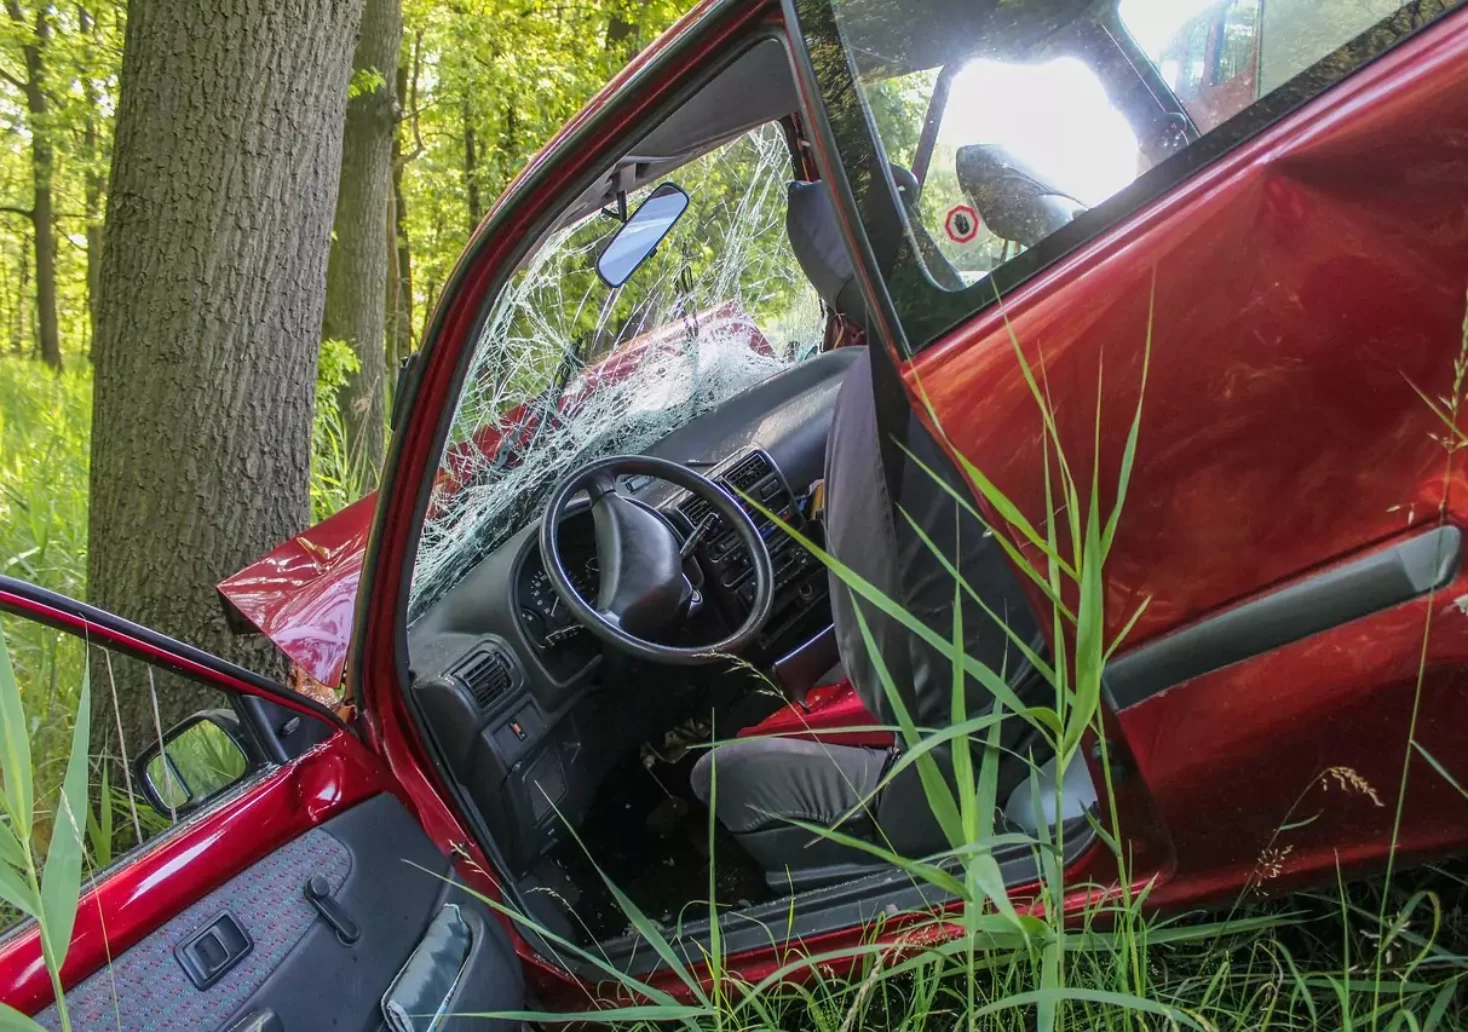 Foto in Beitrag von 5min.at: Zu sehen ist ein Auto, das gegen einen Baum gekracht ist.